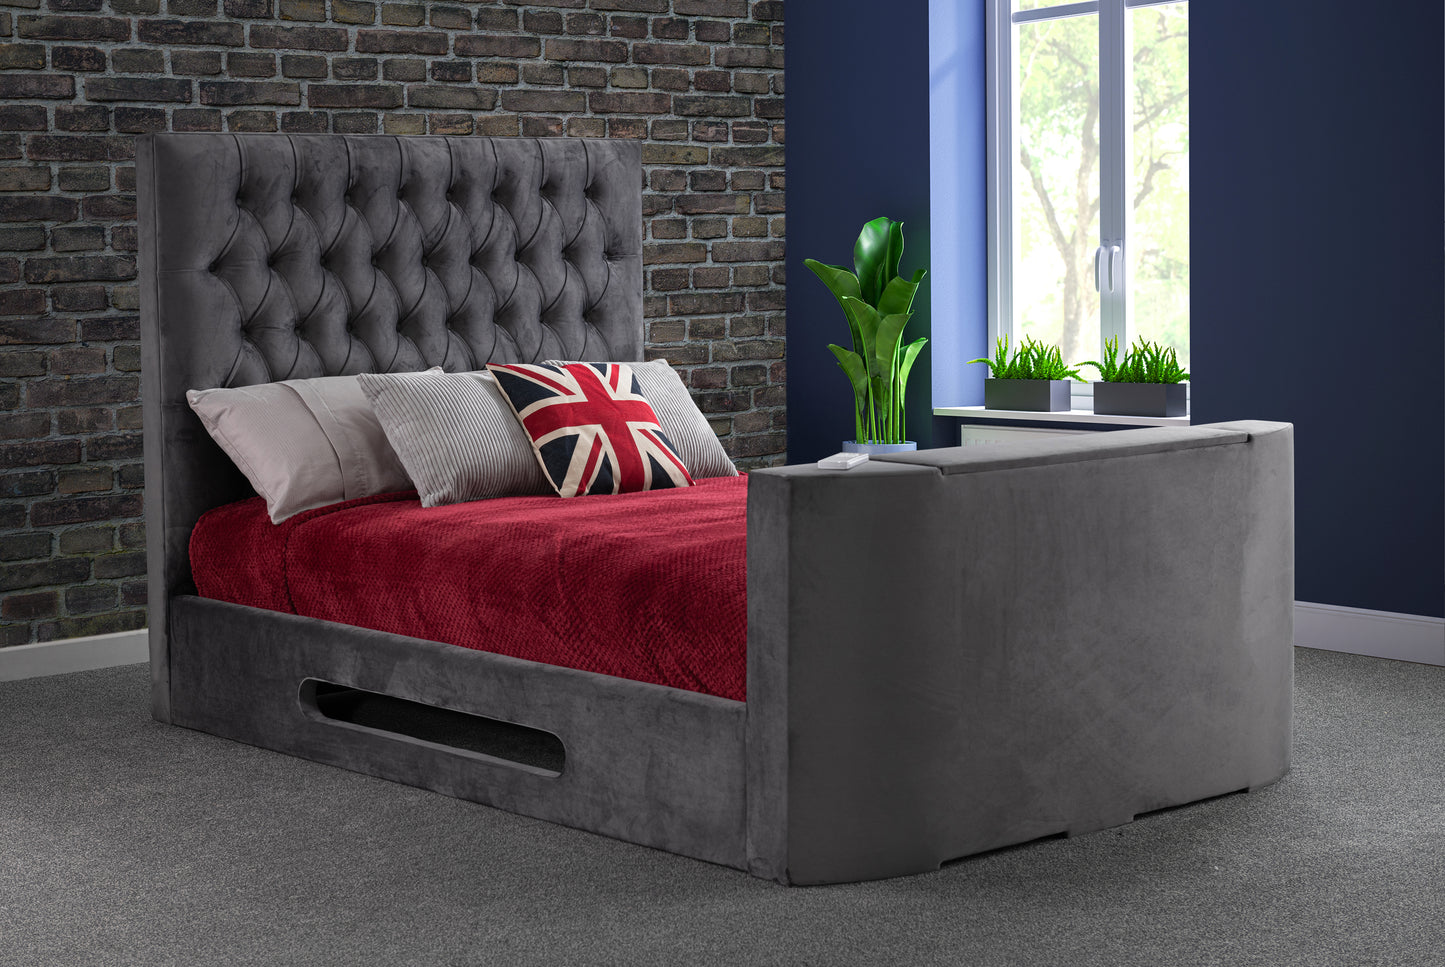 Loren Adjustable Lifestyle TV Bed frame - Sweet Dreams - TV Beds Northwest - adjustabletvbed - choose your colour tvbed